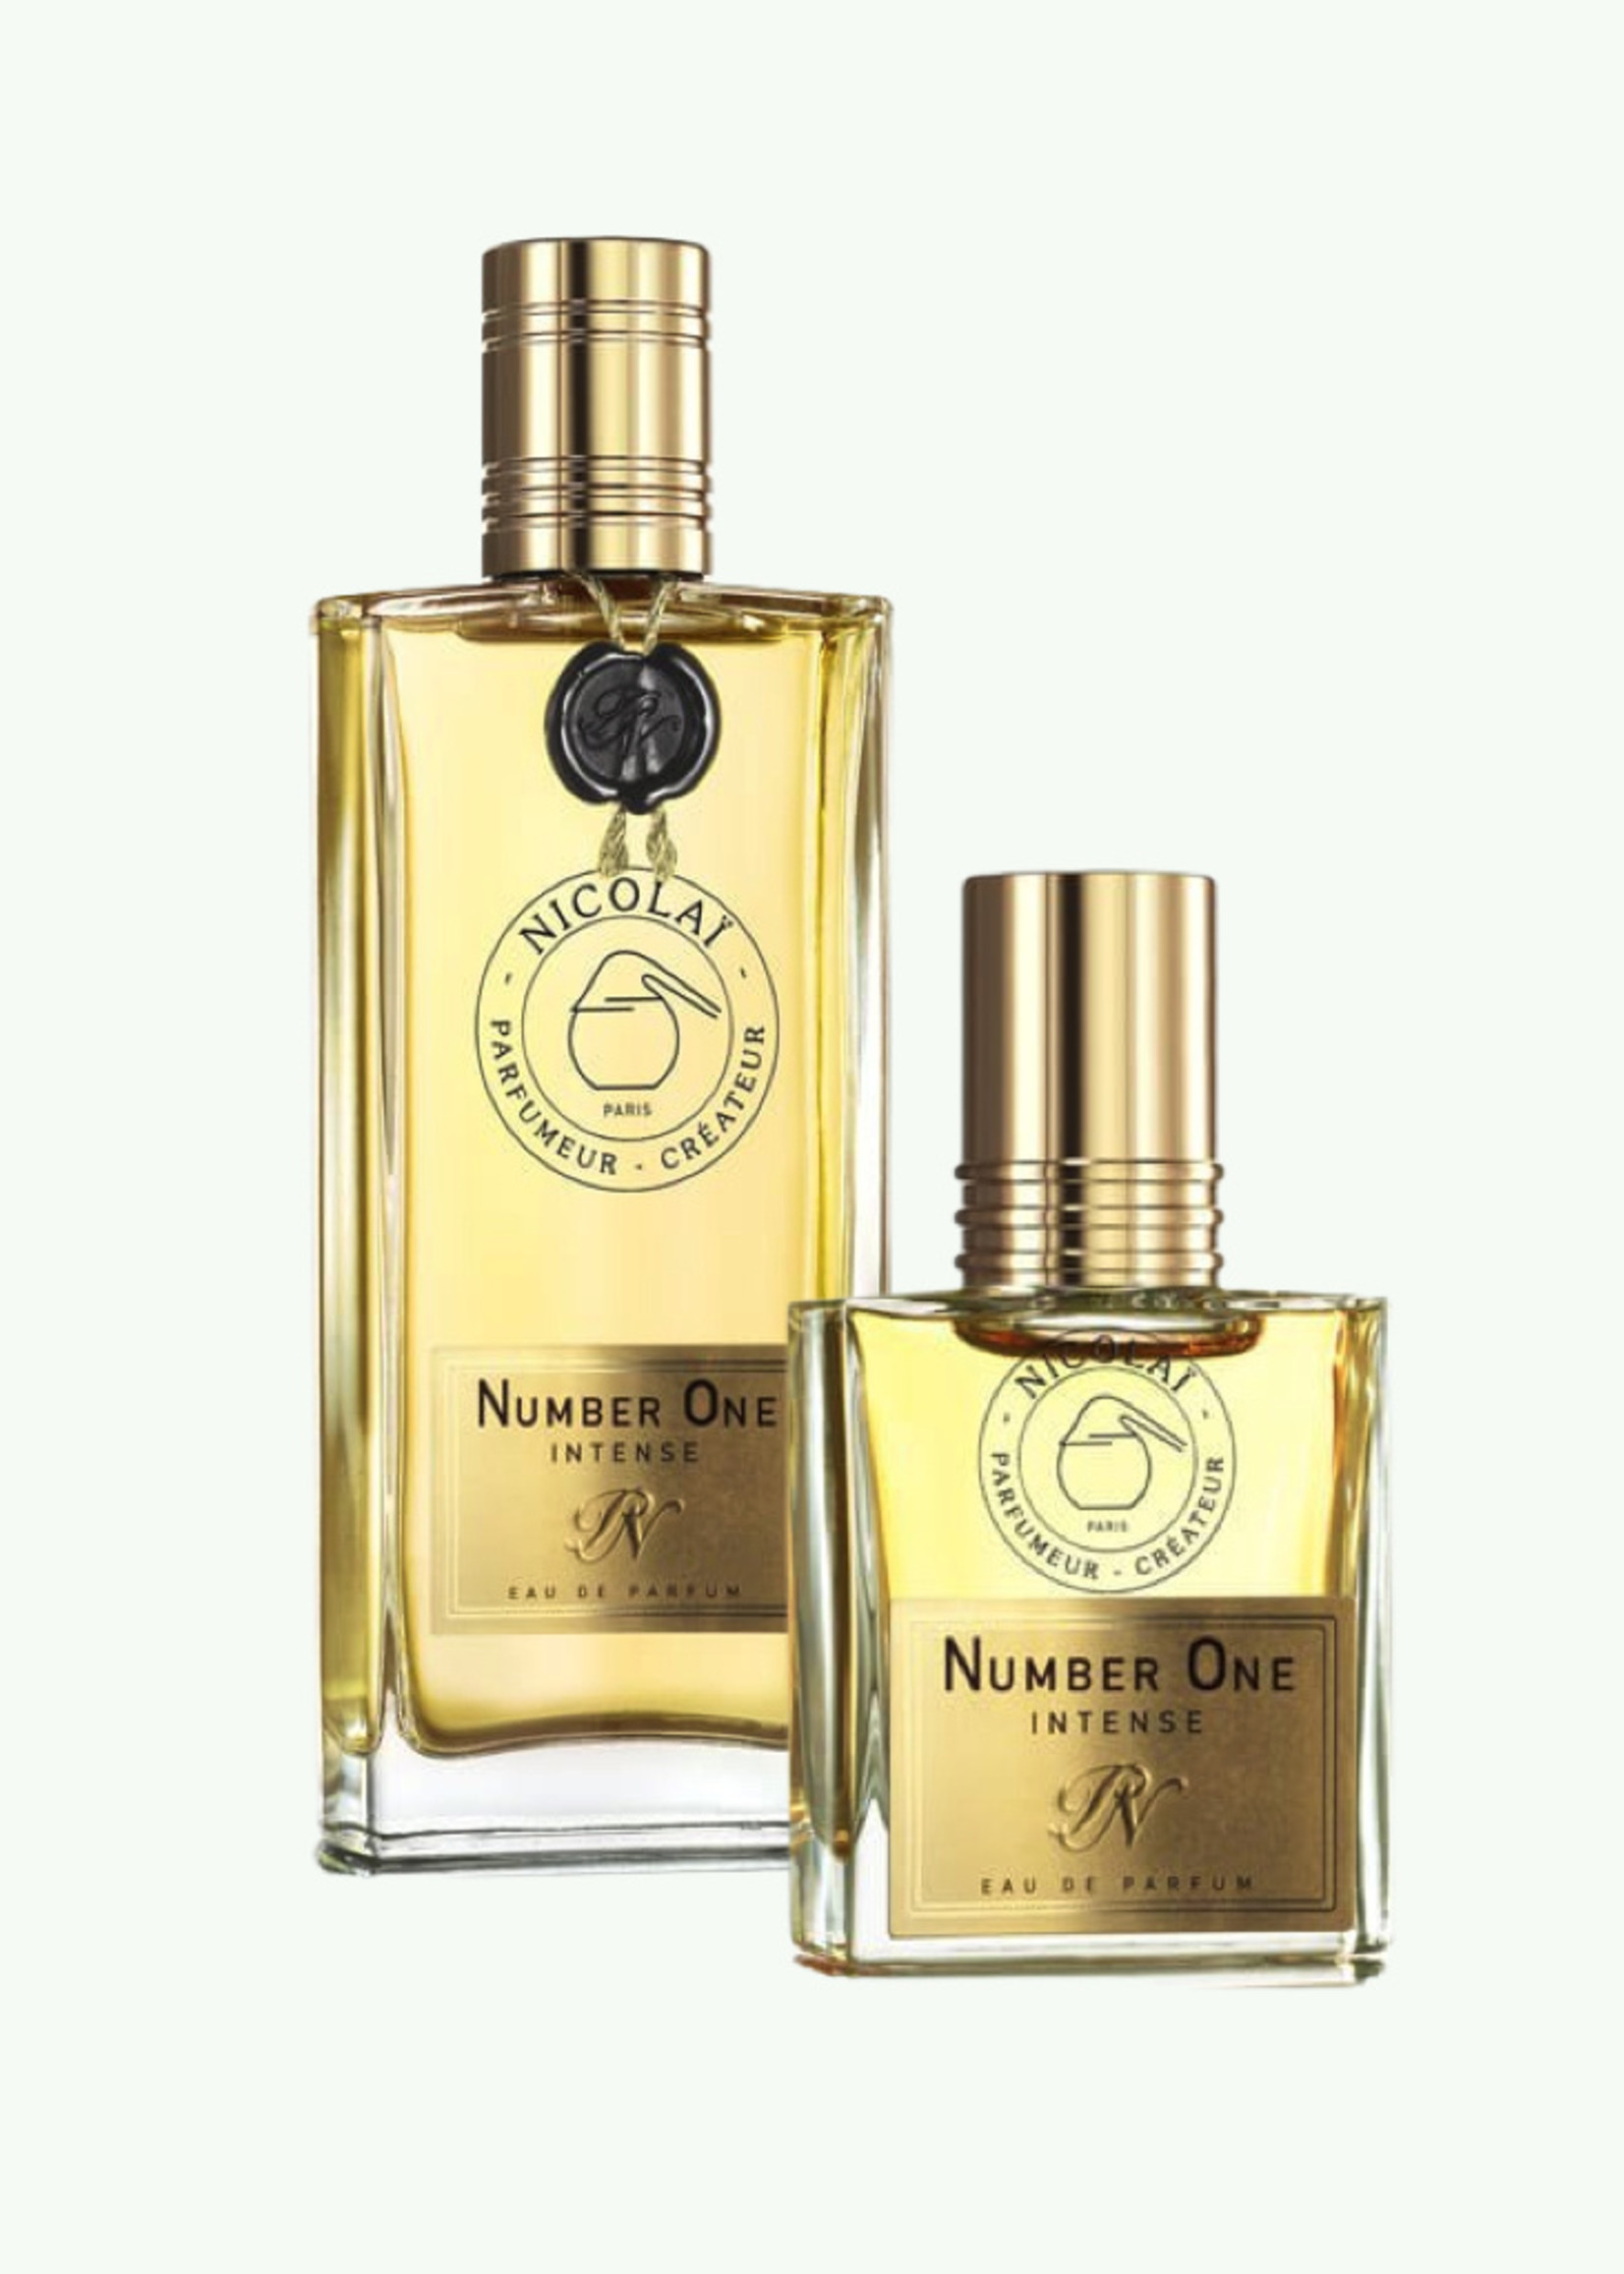 Nicolaï Nicolaï - Number One Intense - Eau de Parfum